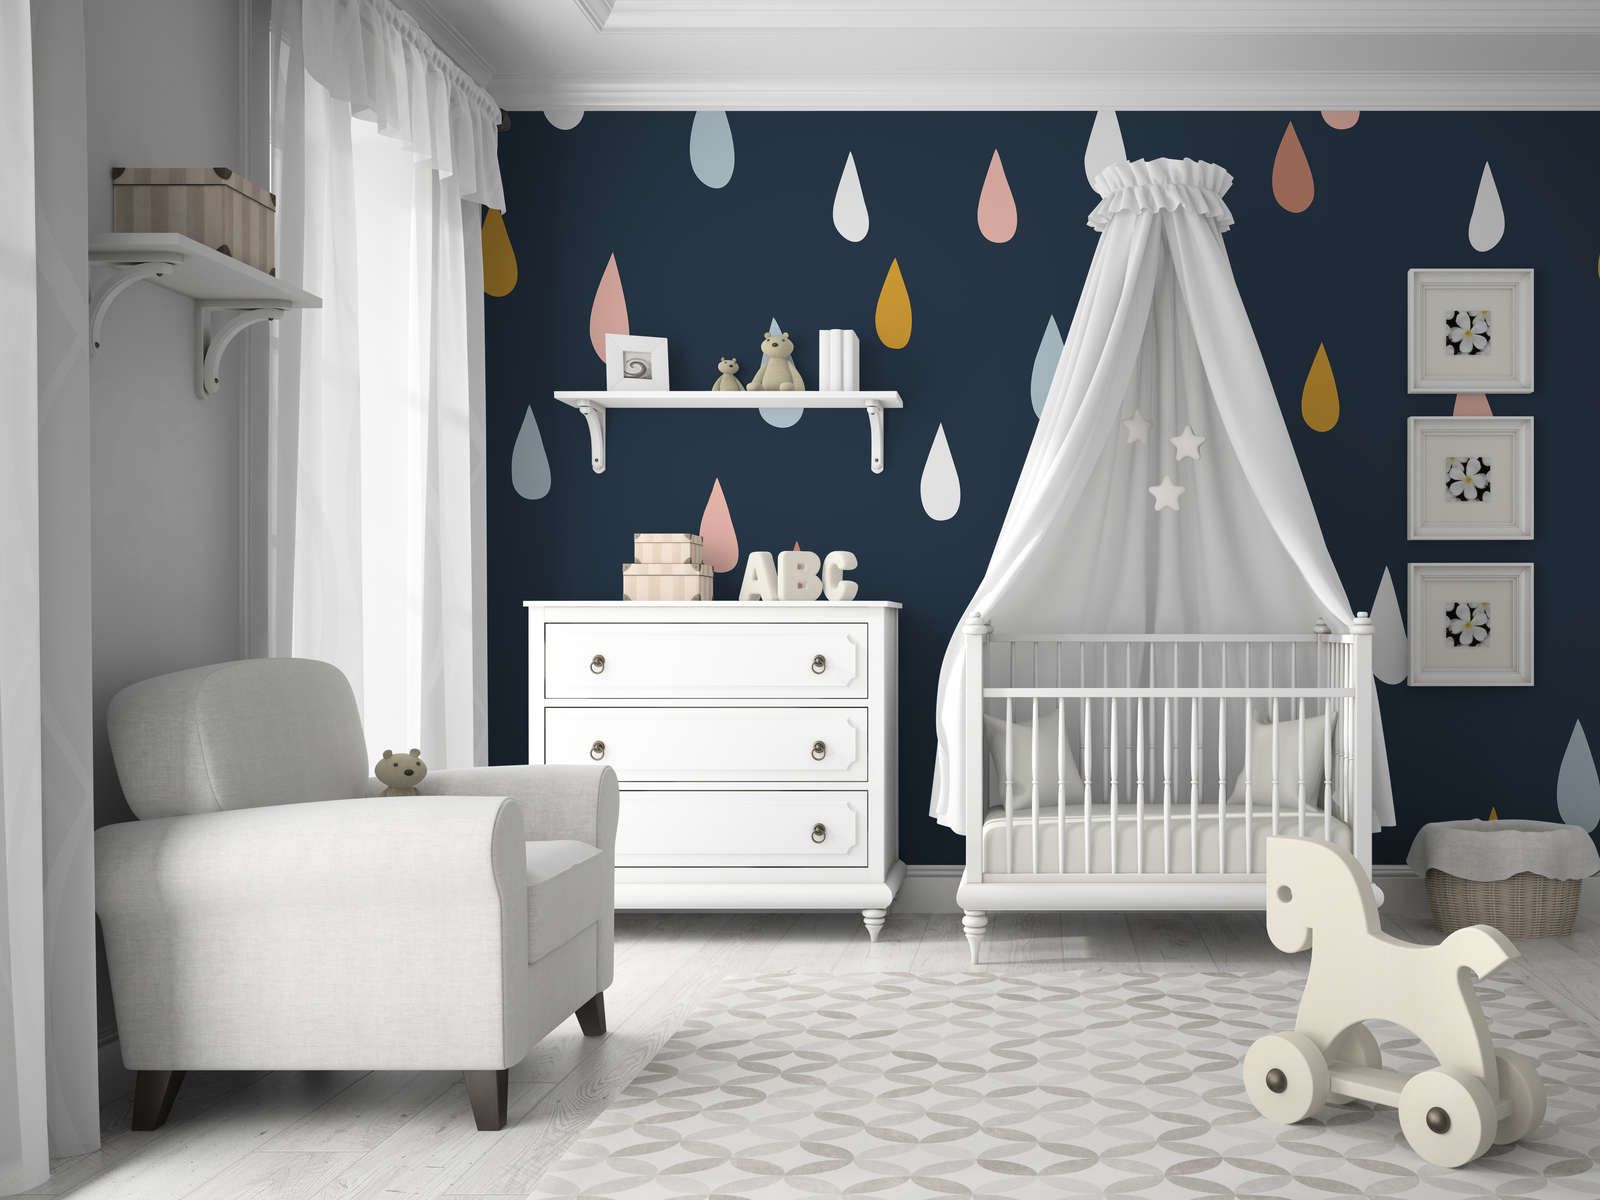             Fototapete fürs Kinderzimmer mit bunten Tropfen – Glattes & perlmutt-schimmerndes Vlies
        